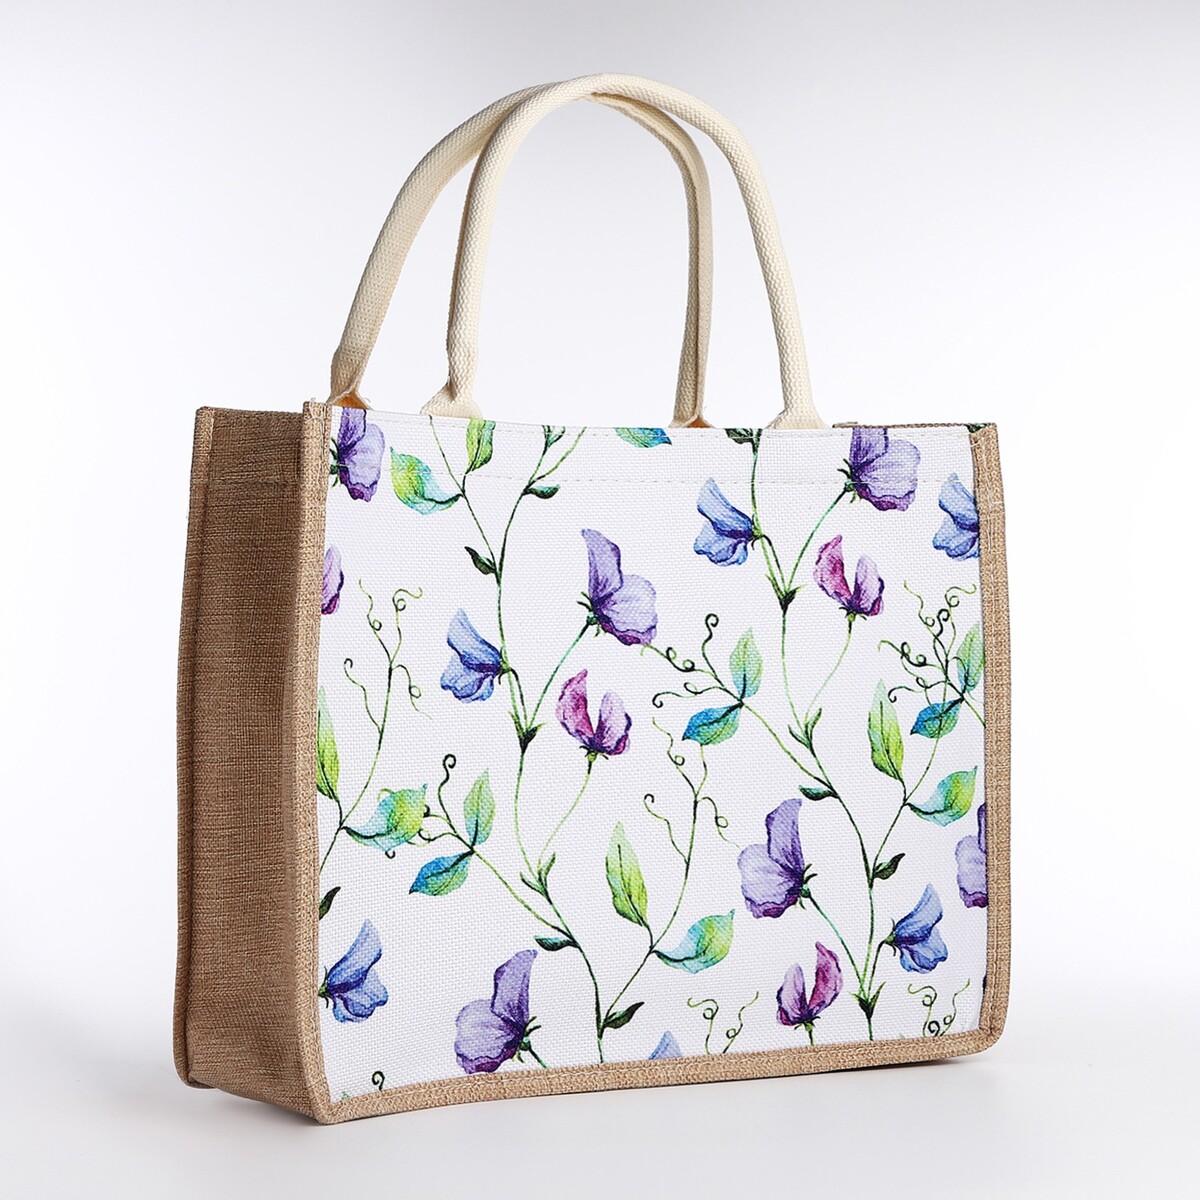 Шопер без застежки, цвет бежевый/разноцветный белая сумка шопер с принтом на петербургскую тематику